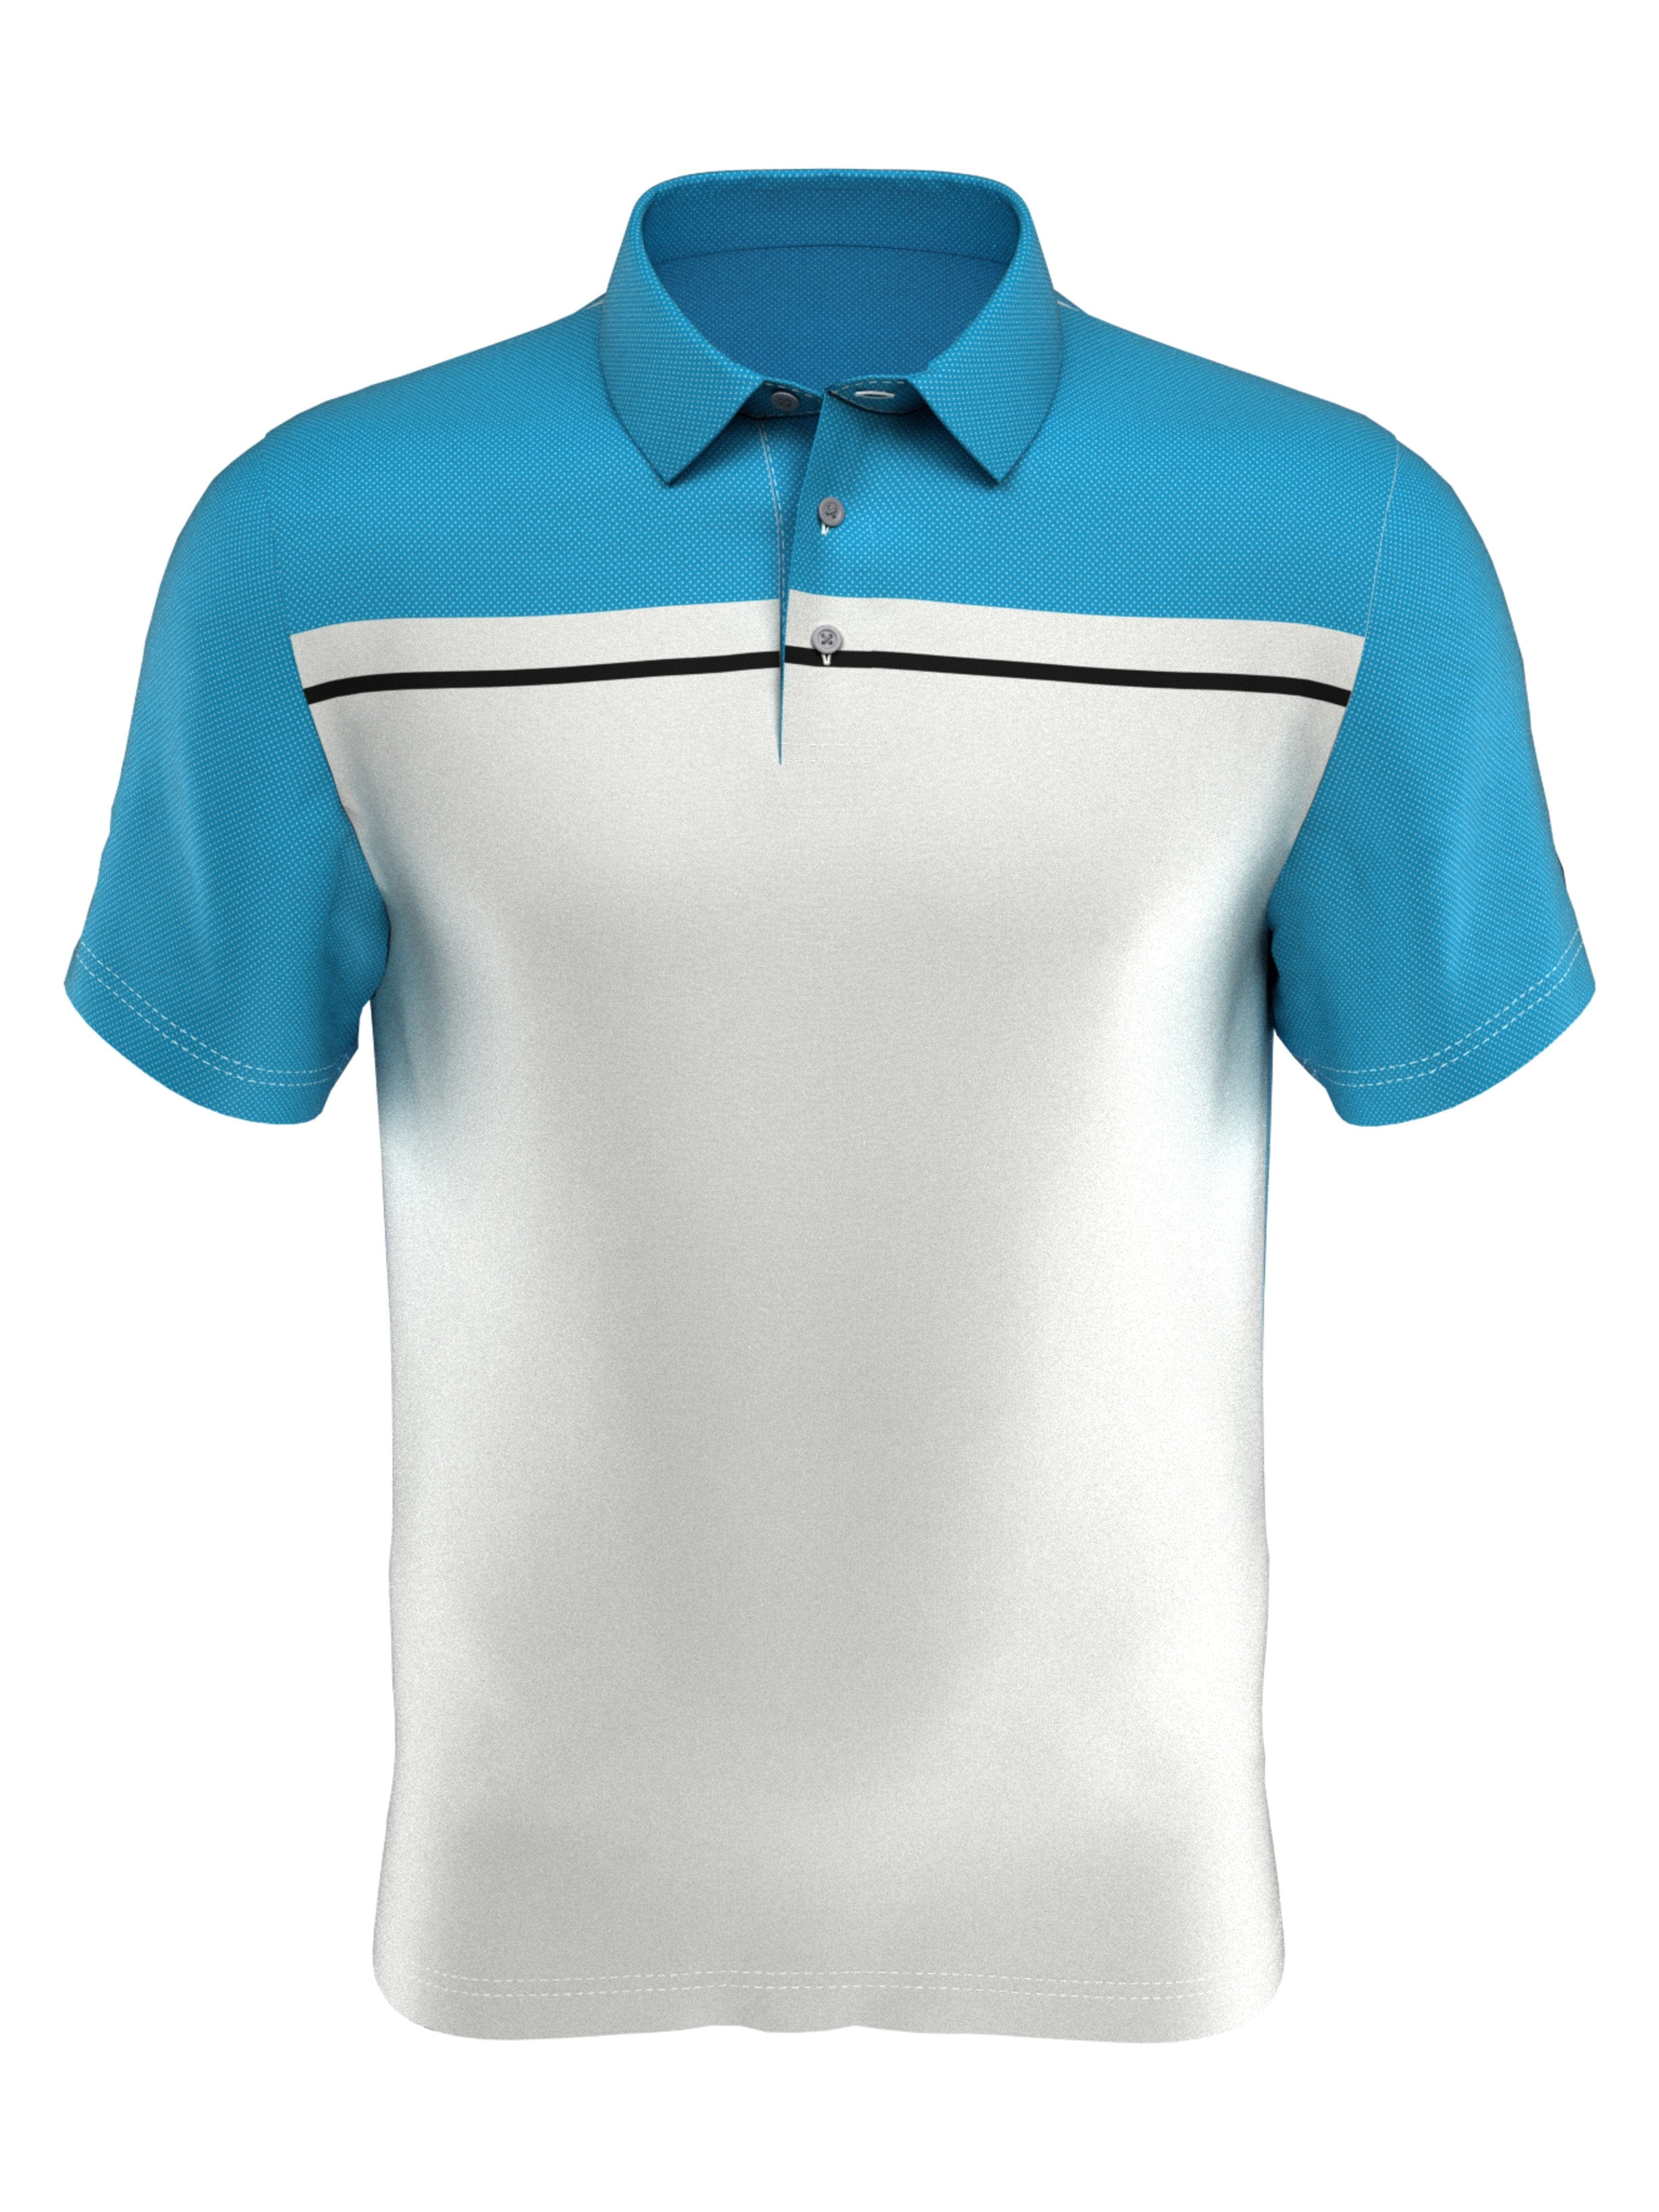 PGA TOUR Apparel Boys Birdseye Print Polo Shirt, Size Large, White, 100% Polyester | Golf Apparel Shop